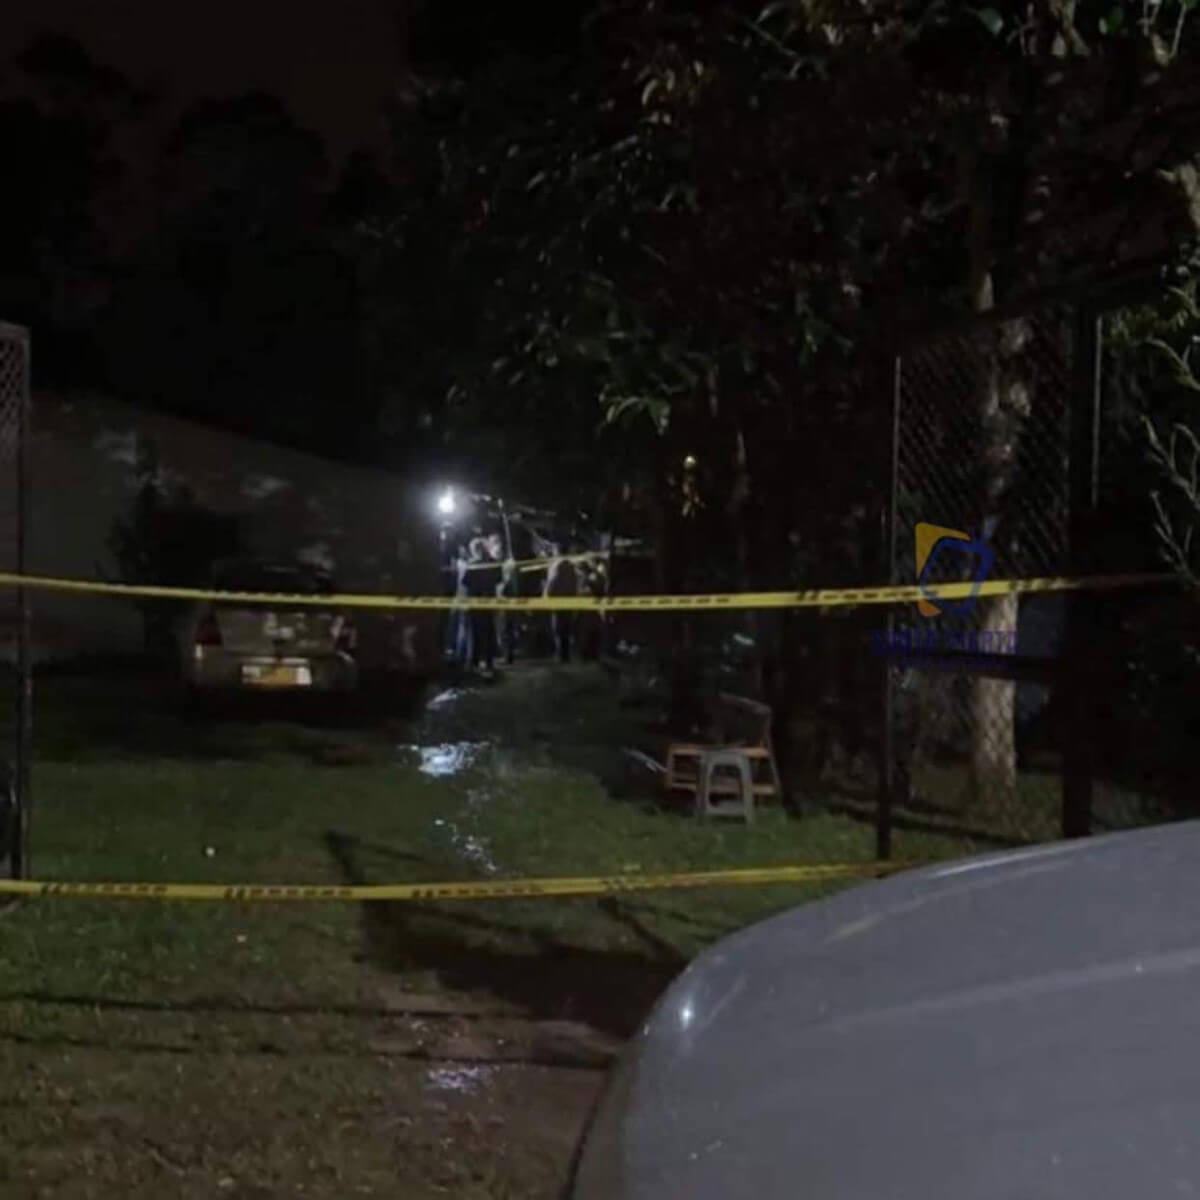 En el municipio de Río Negro - Antioquia, em Colombia hombres fuertemente armados masacraron 6 personas